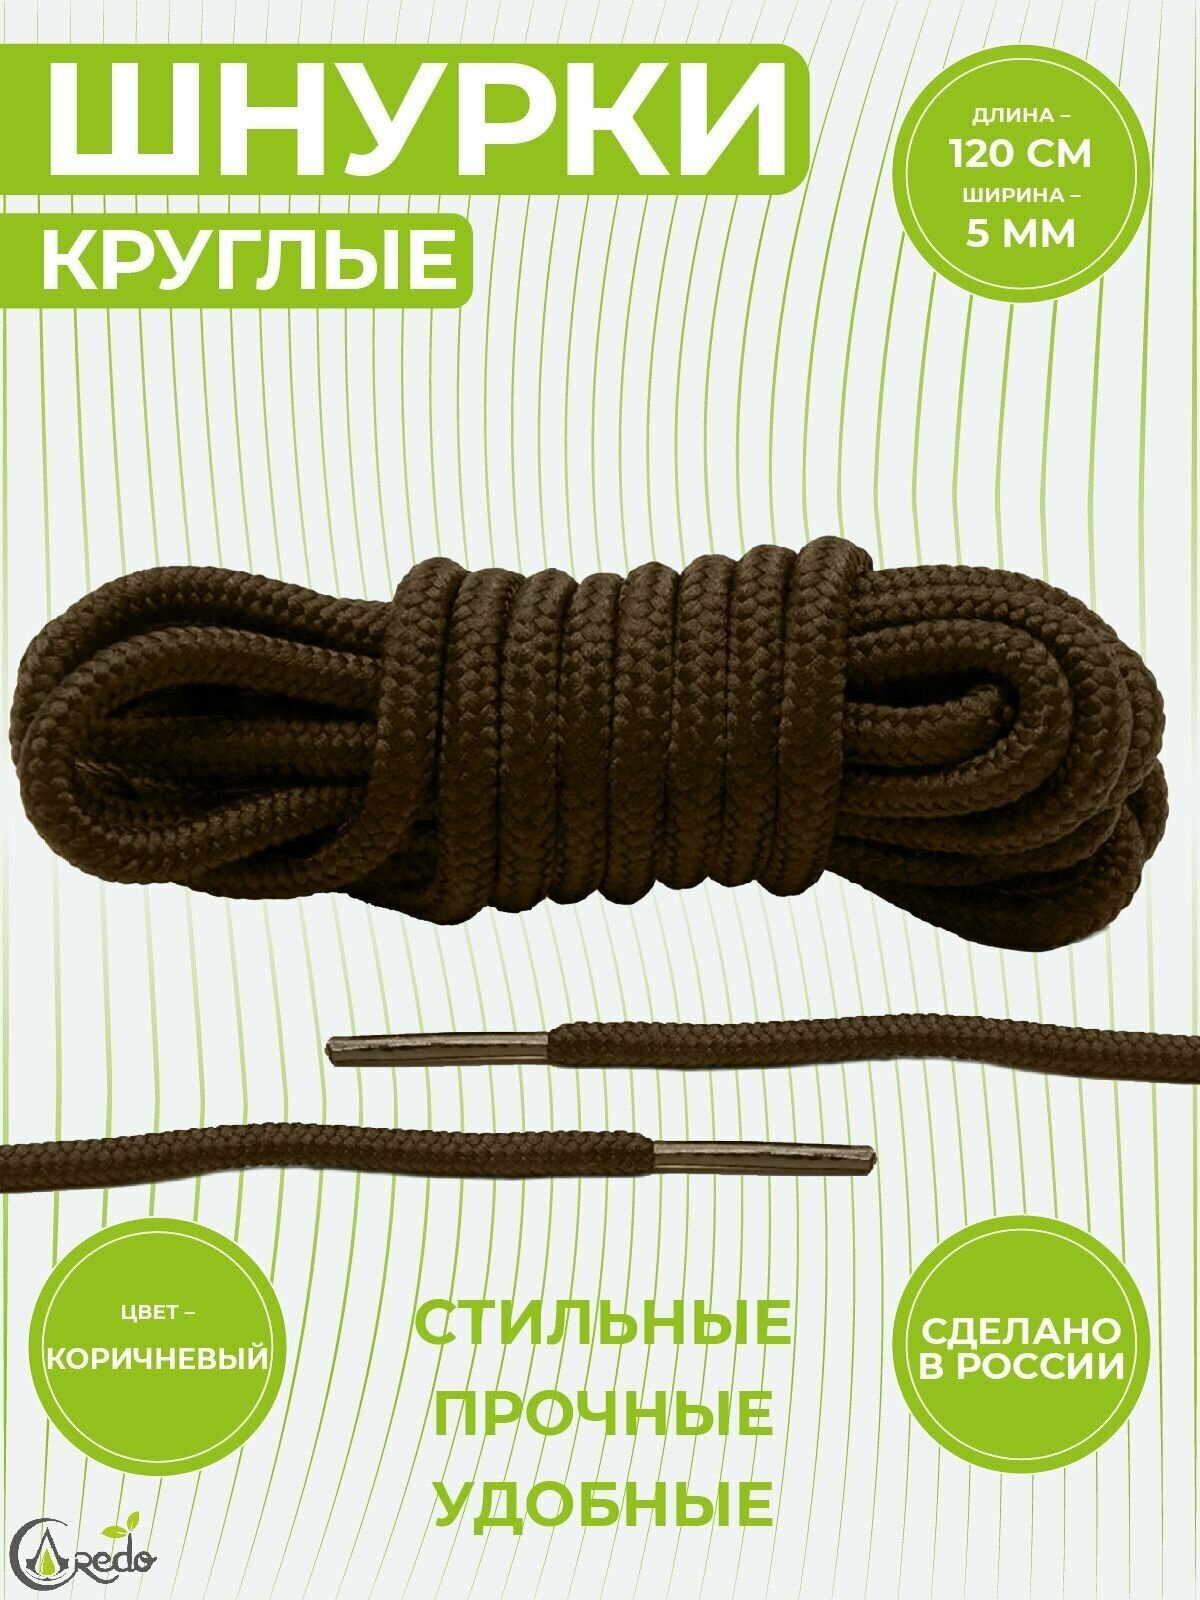 Шнурки для берцев и другой обуви, длина 120 сантиметров, диаметр 5 мм. Сделаны в России. Коричневые